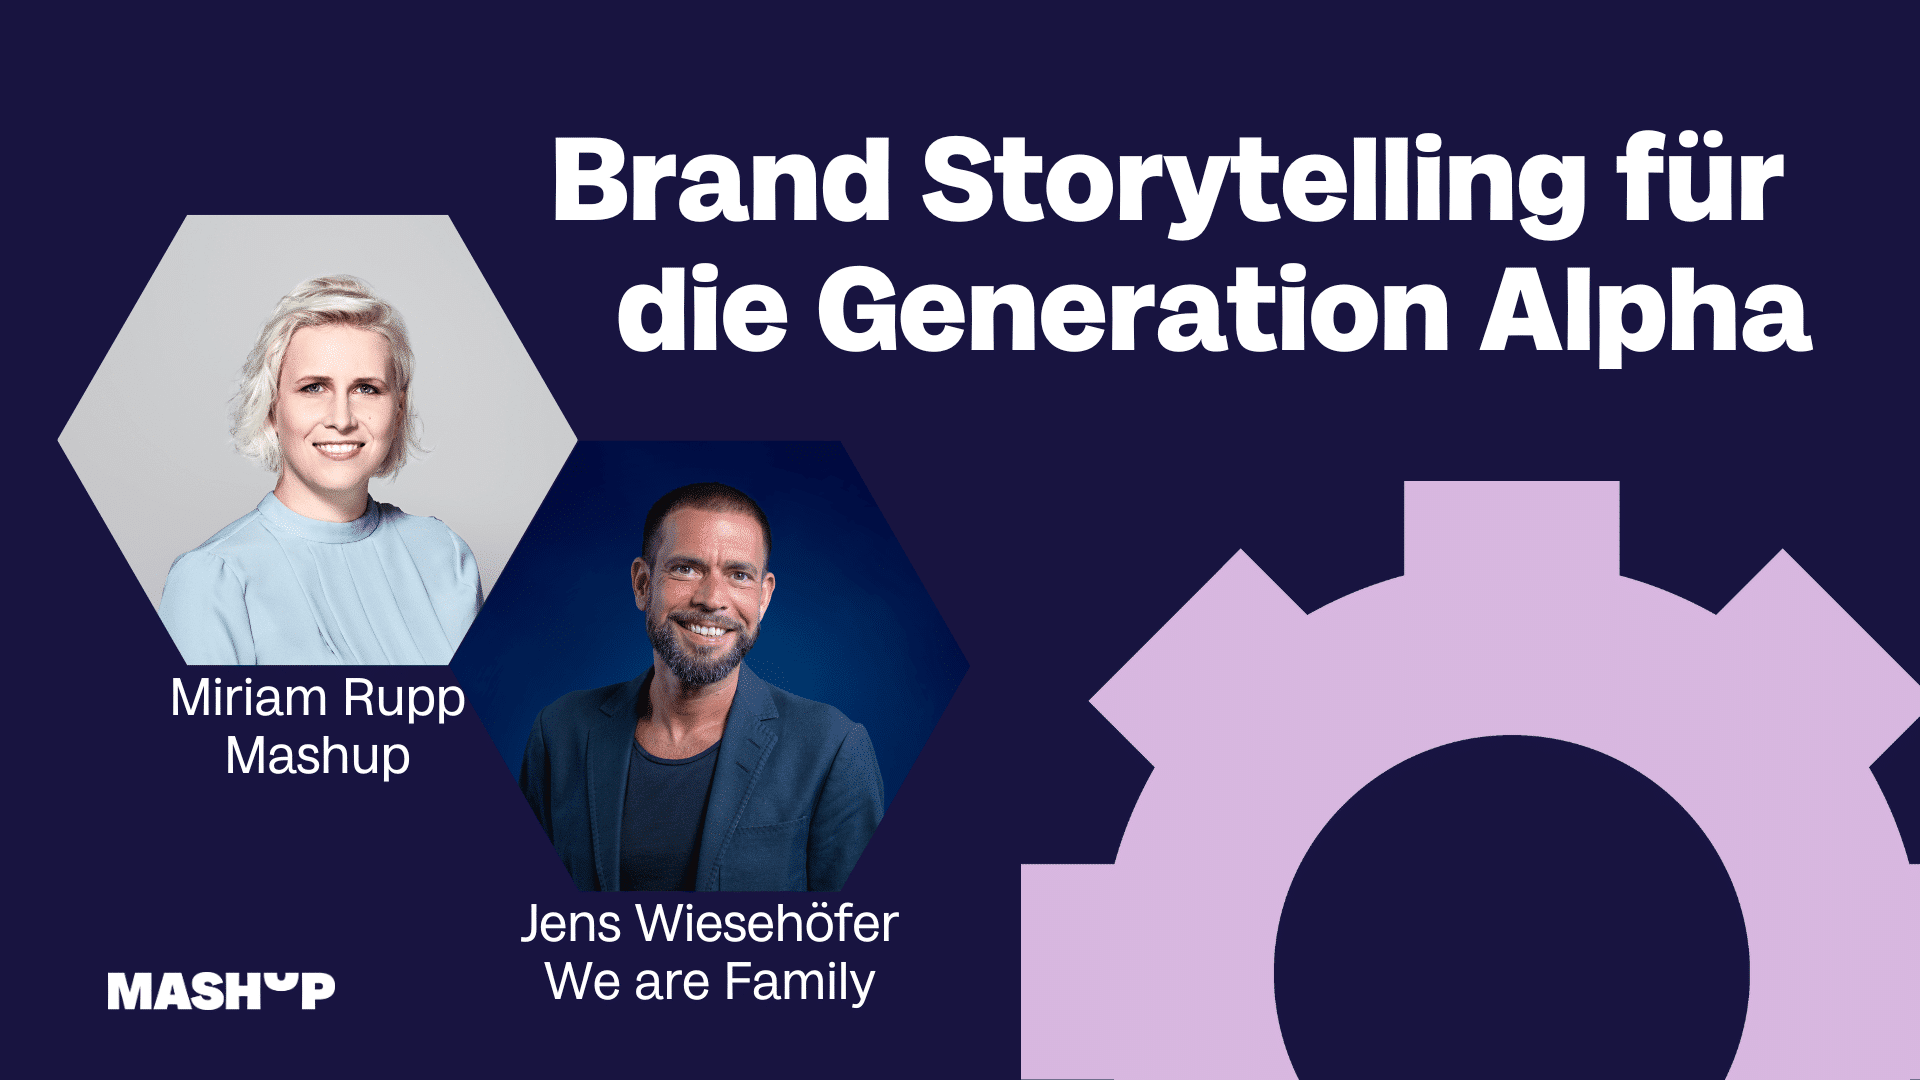 Brand Storytelling für die Generation Alpha – Jens Wiesehöfer